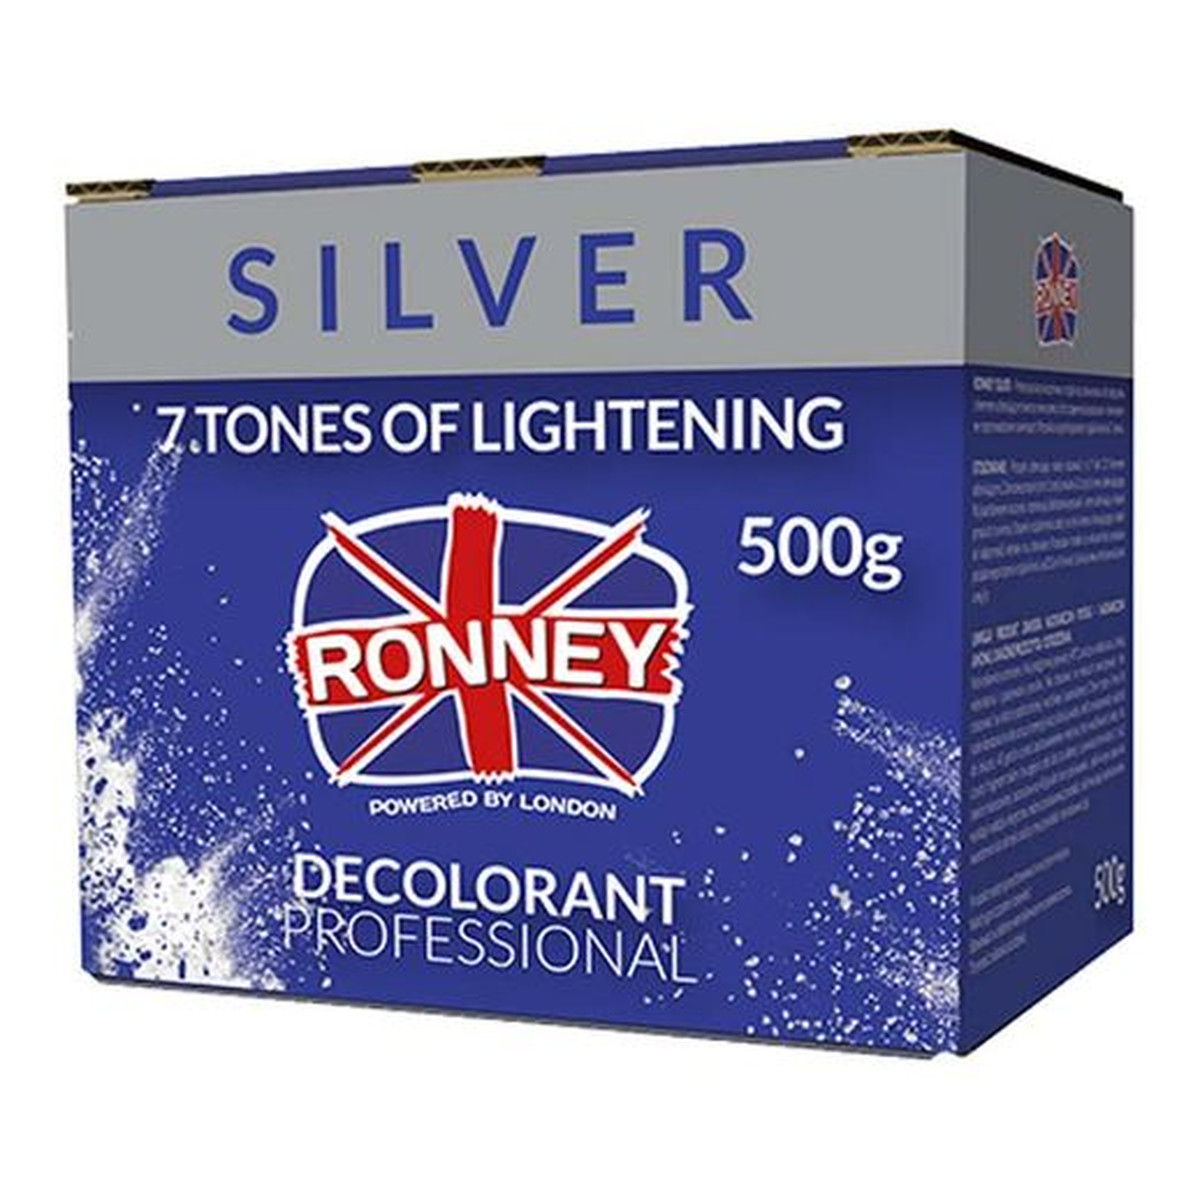 Ronney Professional decolorant silver profesjonalny bezpyłowy rozjaśniacz do włosów 500g